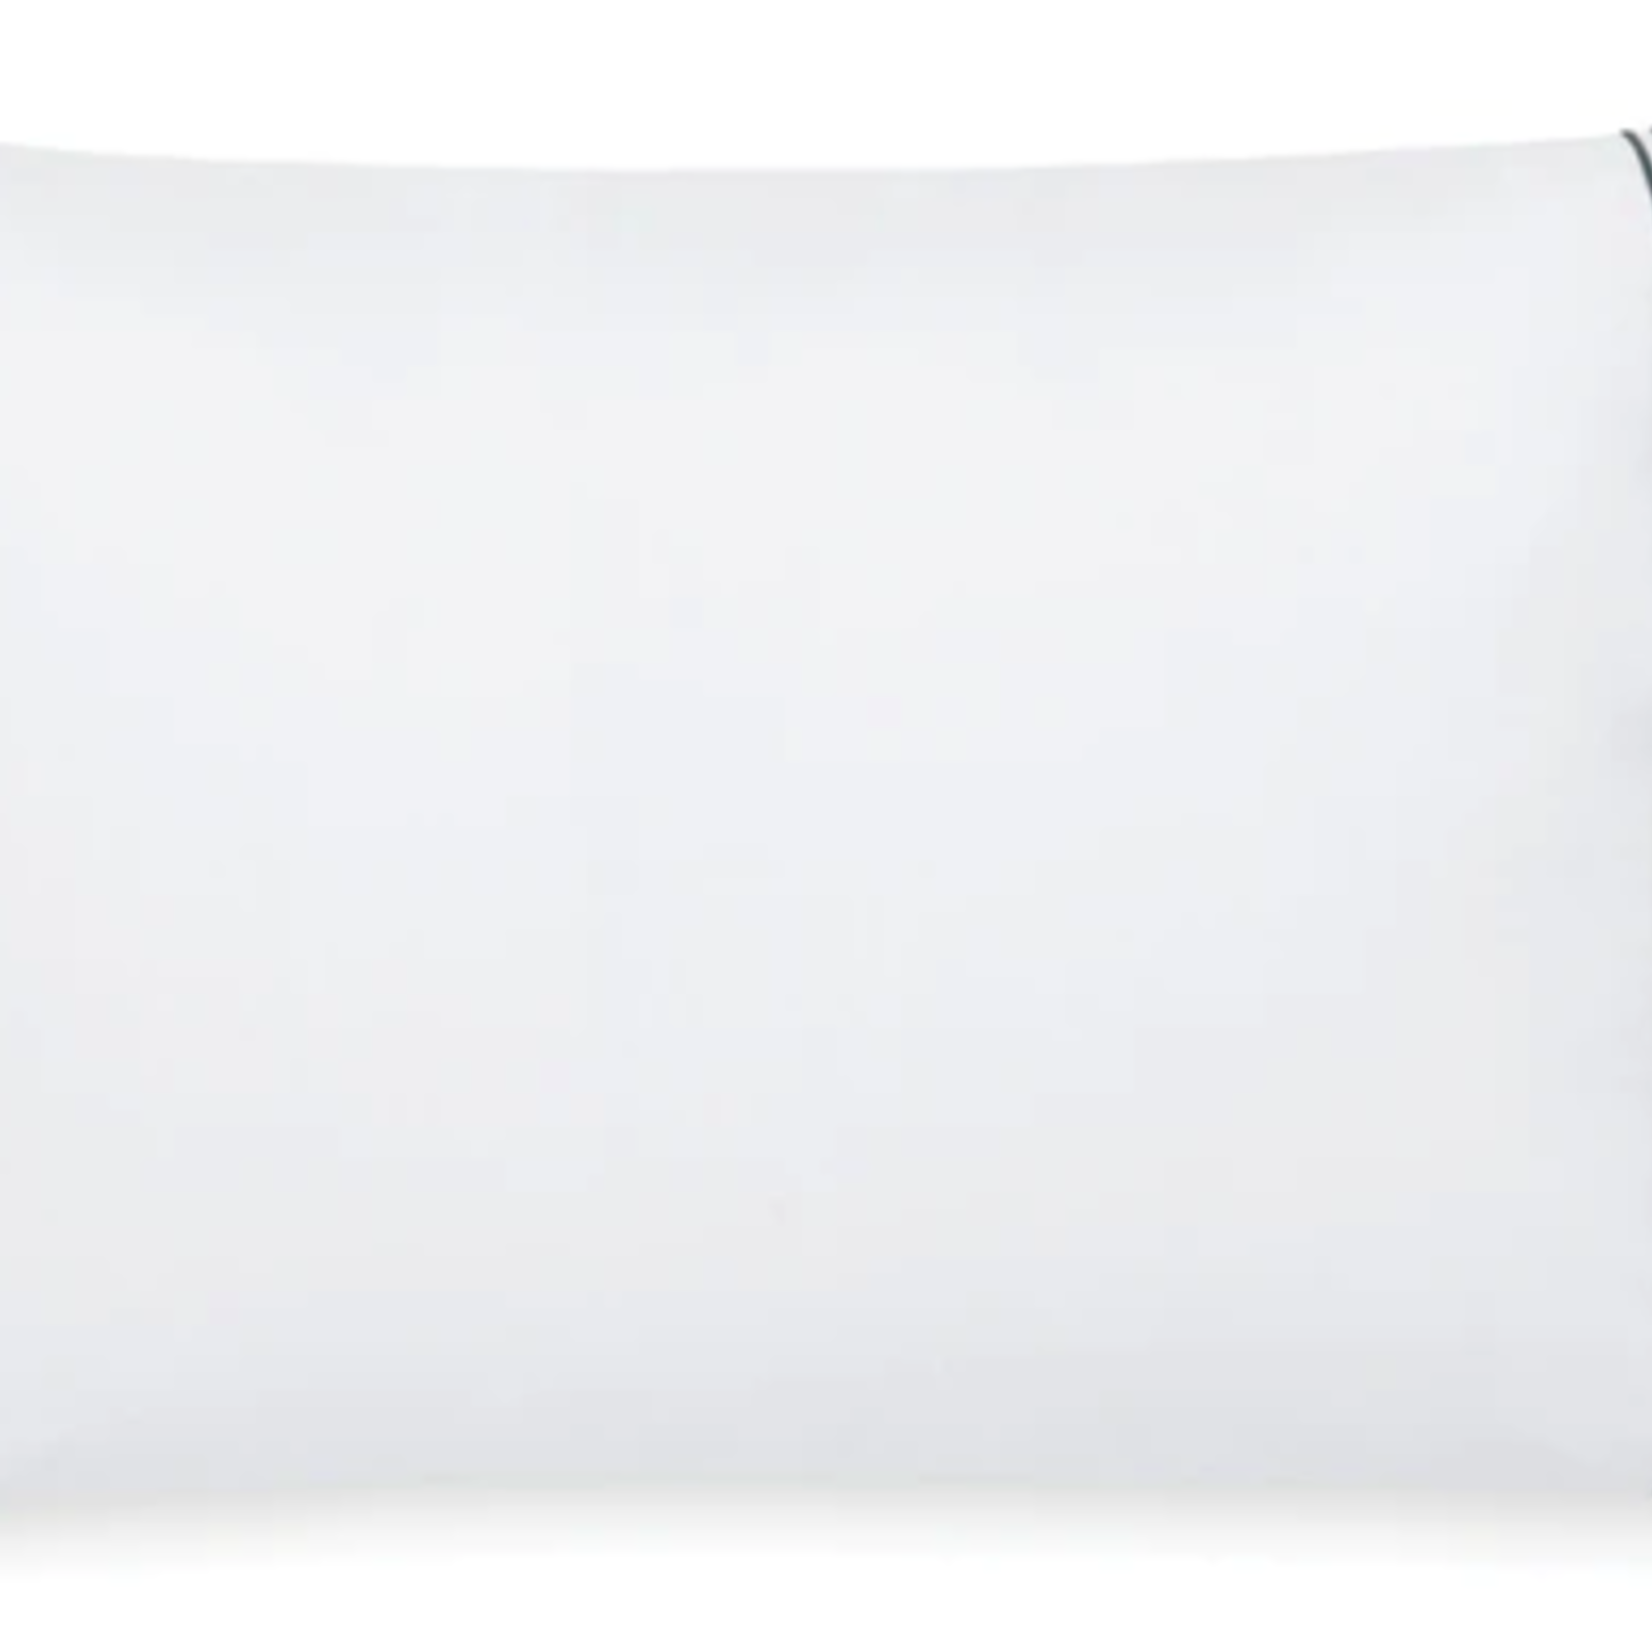 Sferra G4 Grande Hotel Pillowcases, Standard, White/Black, Set of 2